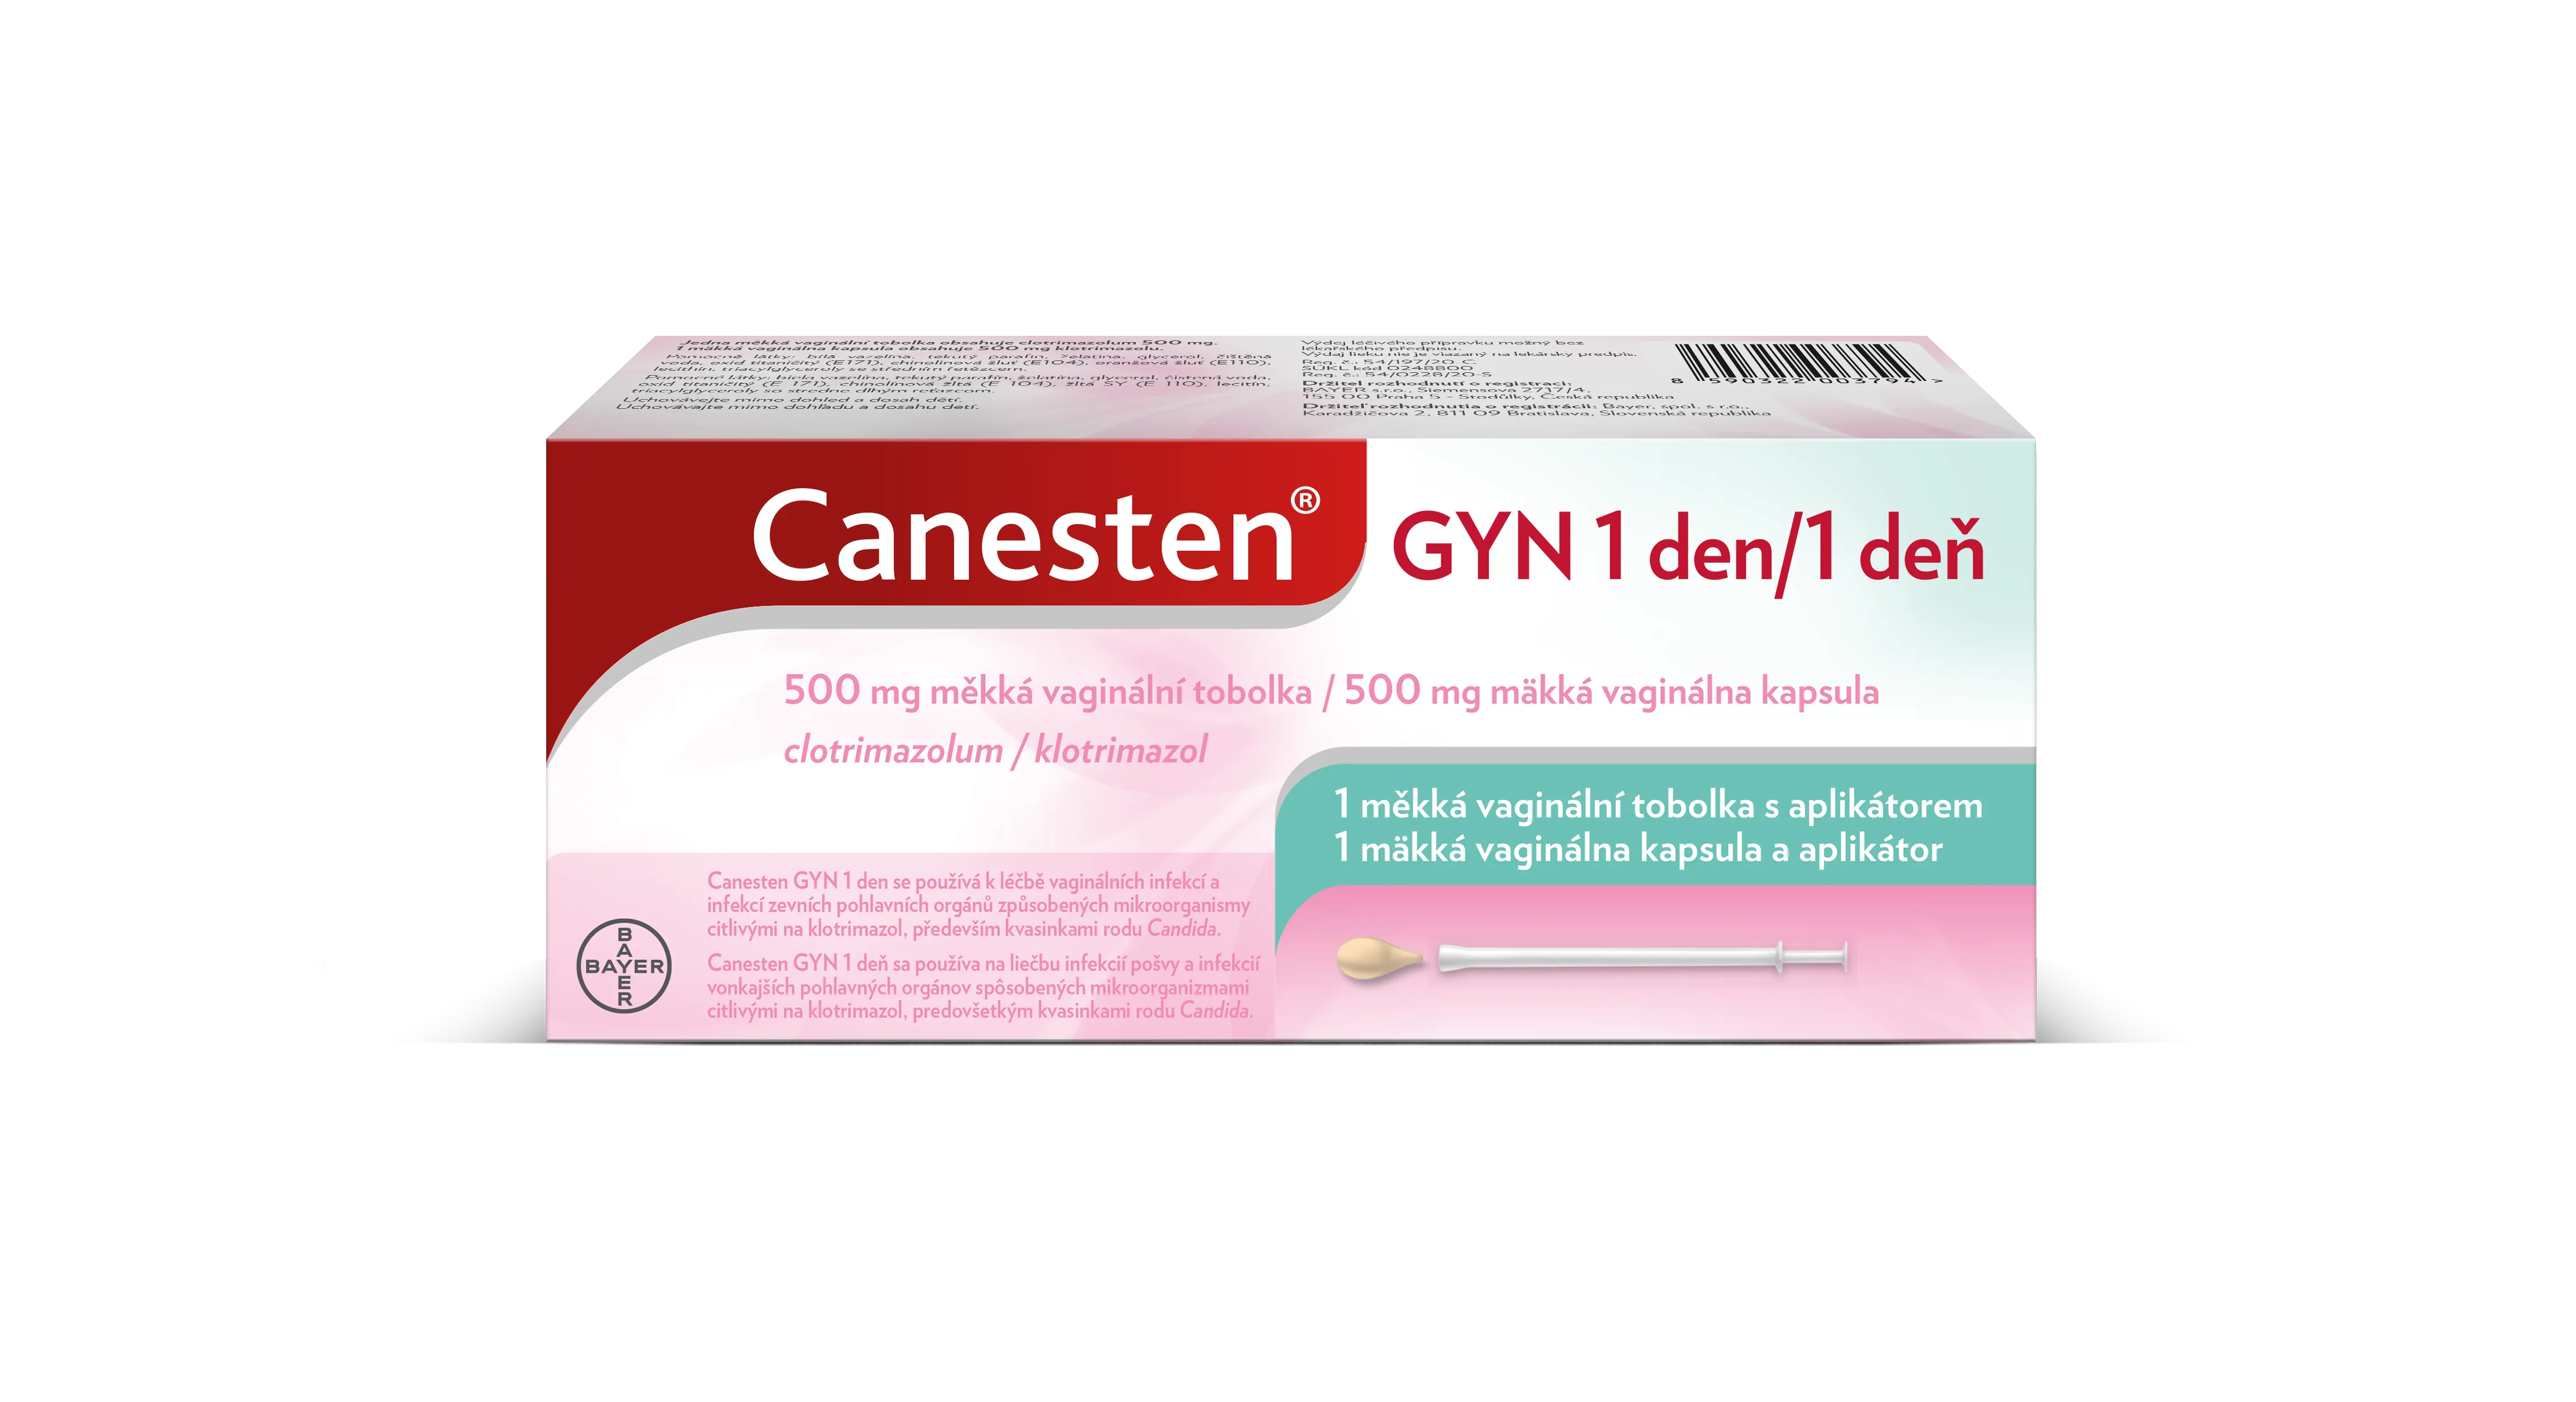 Canesten® GYN 1 den ve formě měkké vaginální tobolky nebo vaginální tablety